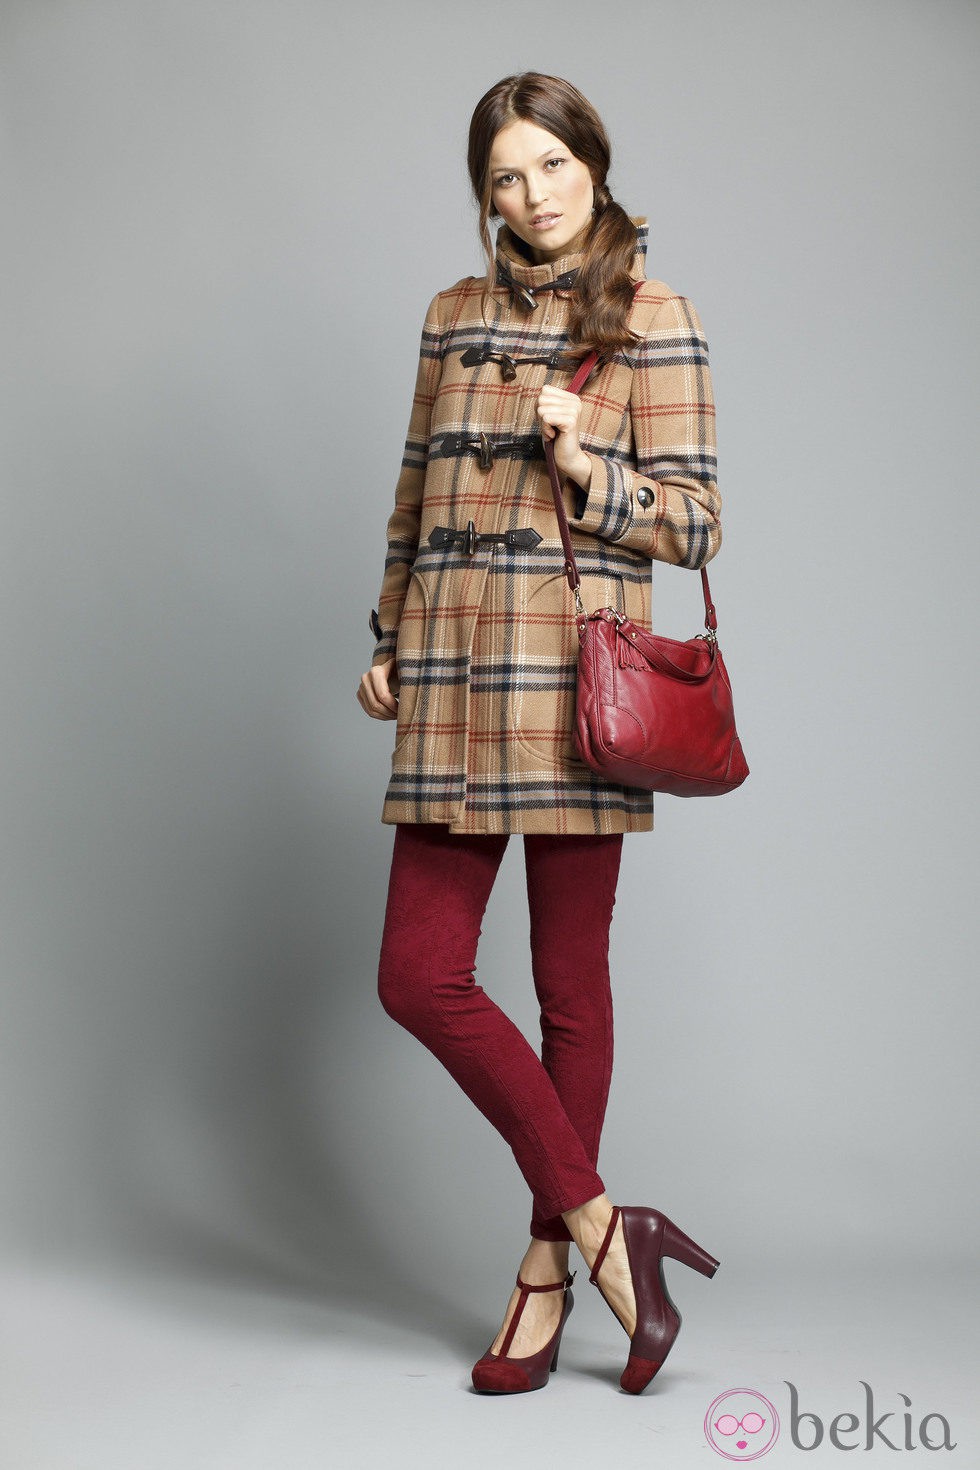 Pantalón rojo de la colección otoño/invierno 2013/2014 de Indi&Cold